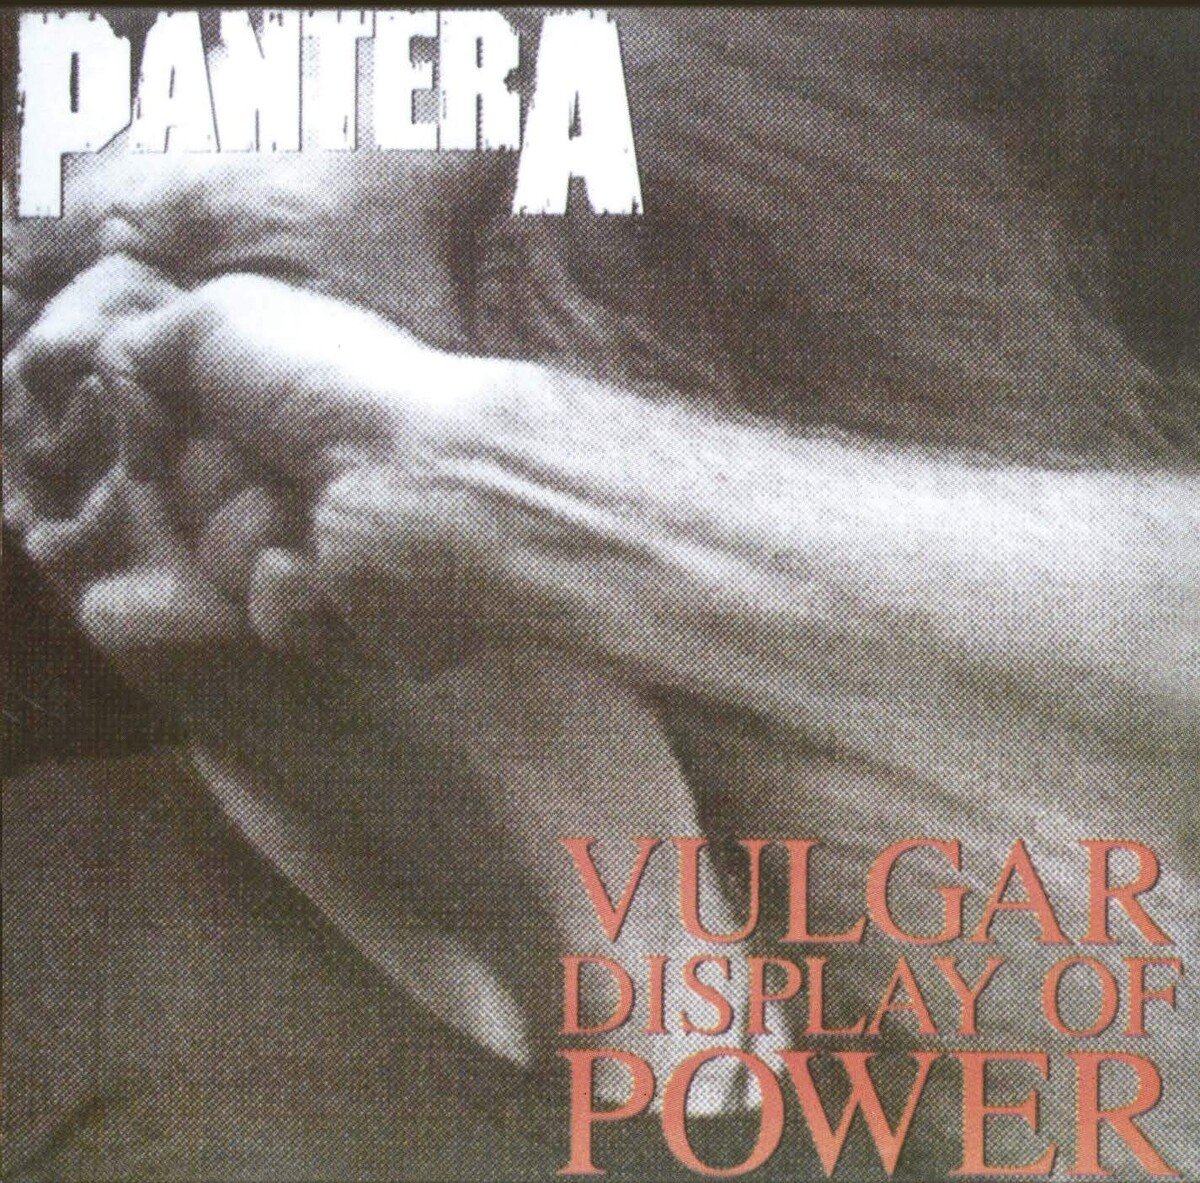 Vulgar Display of Power (1992).